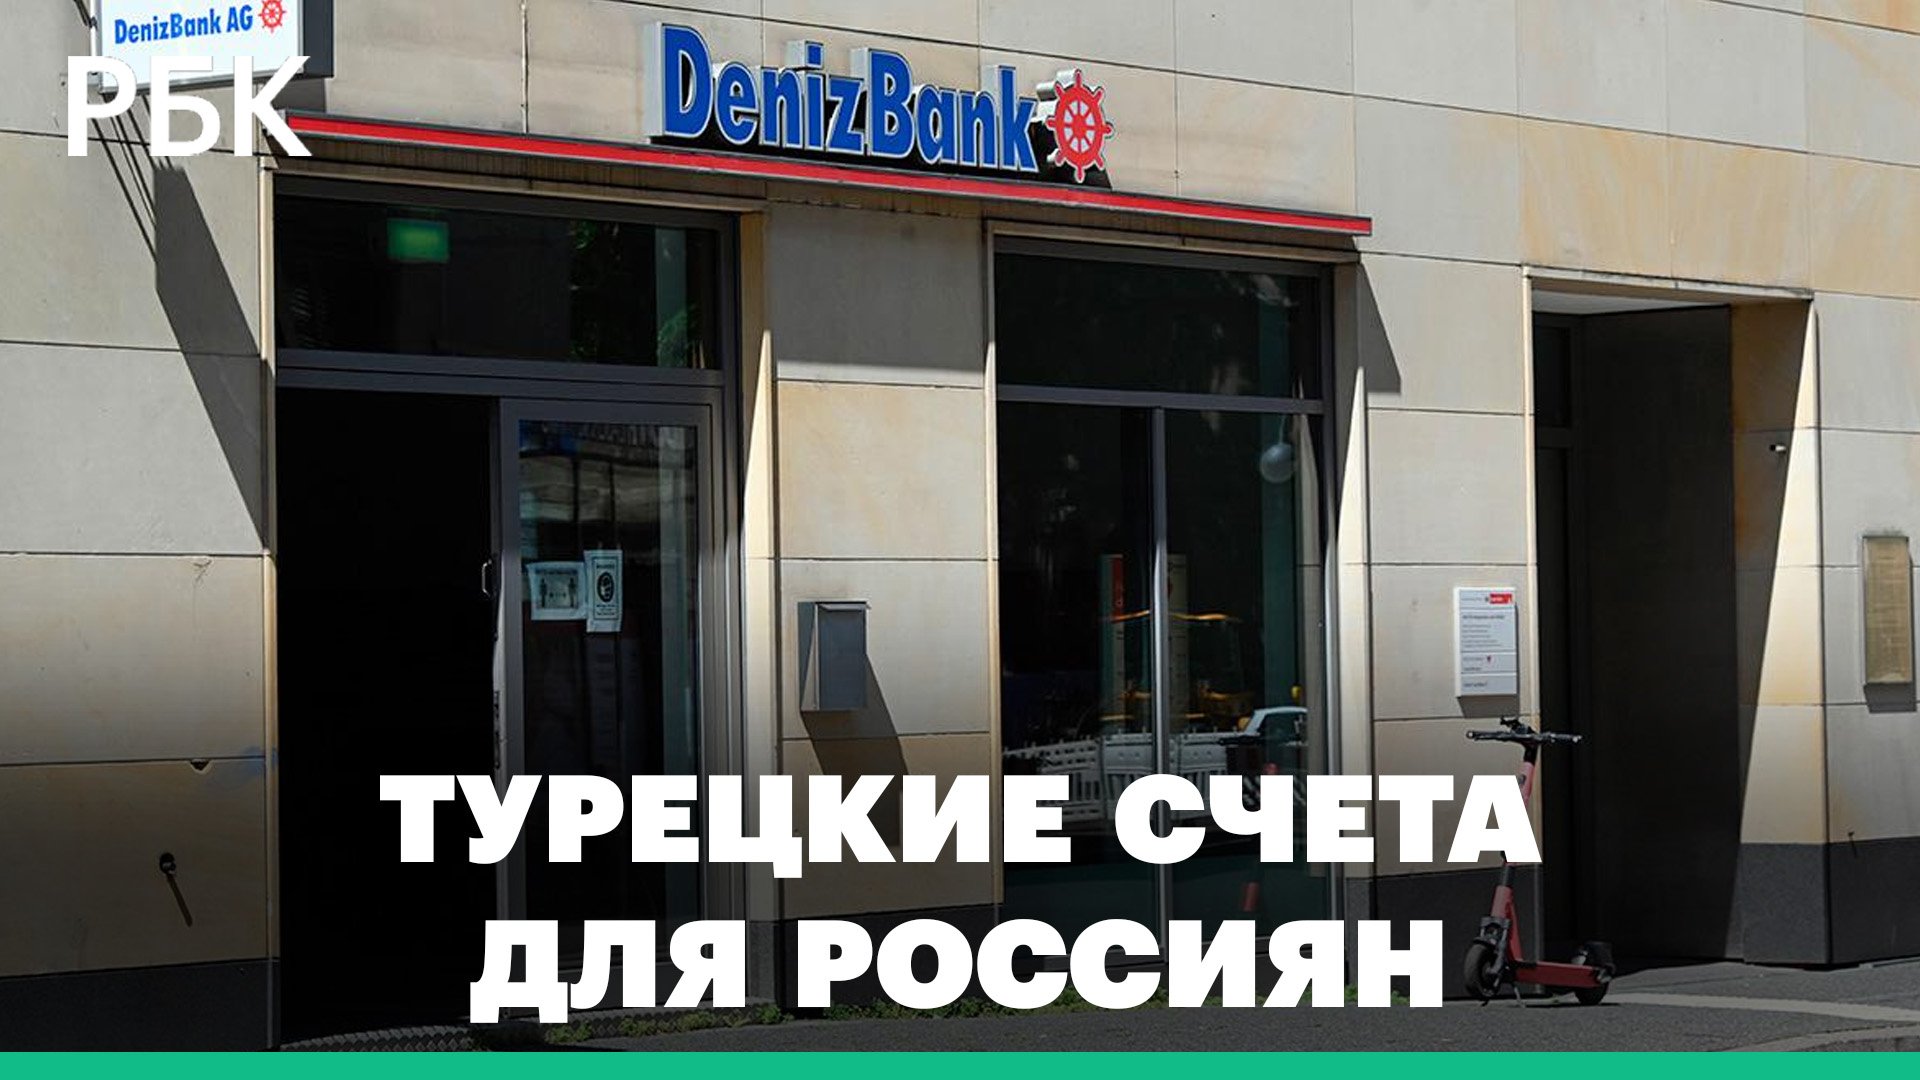 Denizbank изменил условия открытия счета для россиян